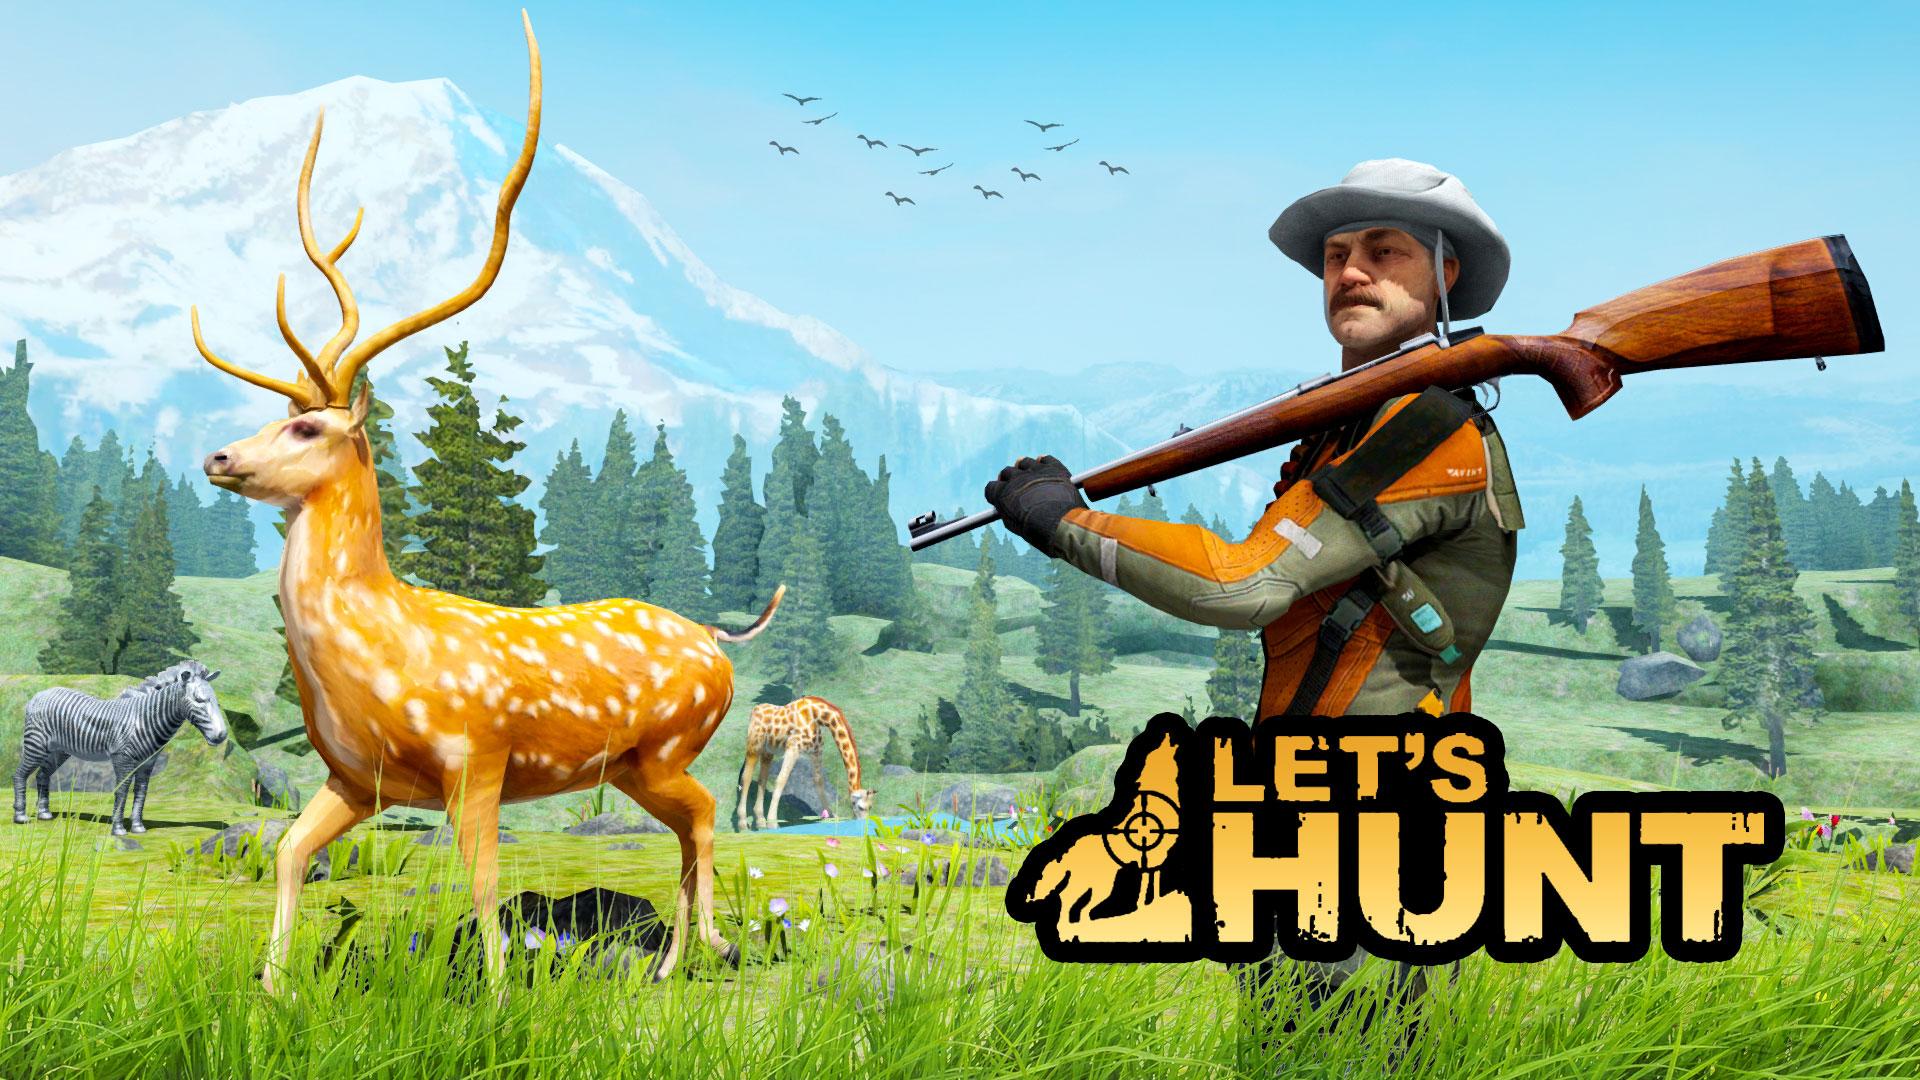 Игра охота. Hunter 2022 игра. Игра про охоту на животных на ПК. Охотничьи игры - Hunting games (2023).